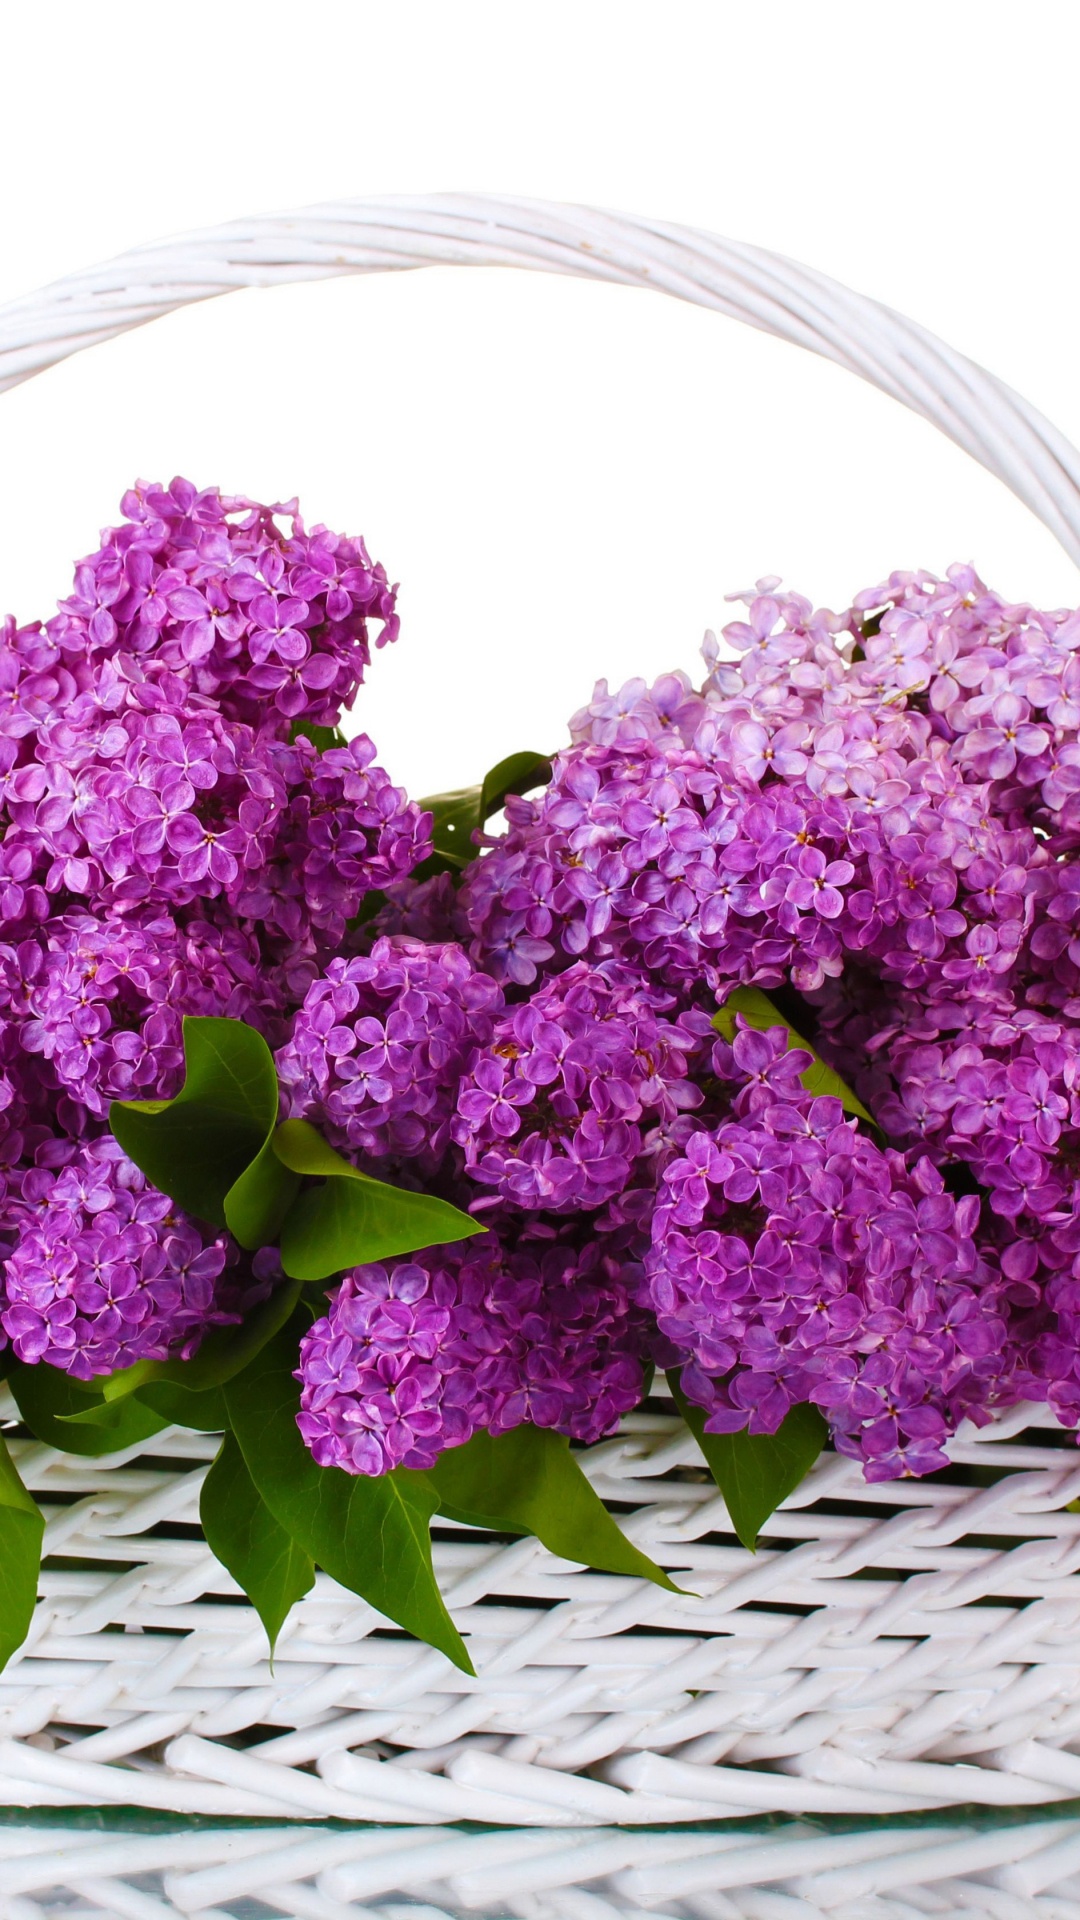 Fleurs Violettes Sur Panier Tressé. Wallpaper in 1080x1920 Resolution